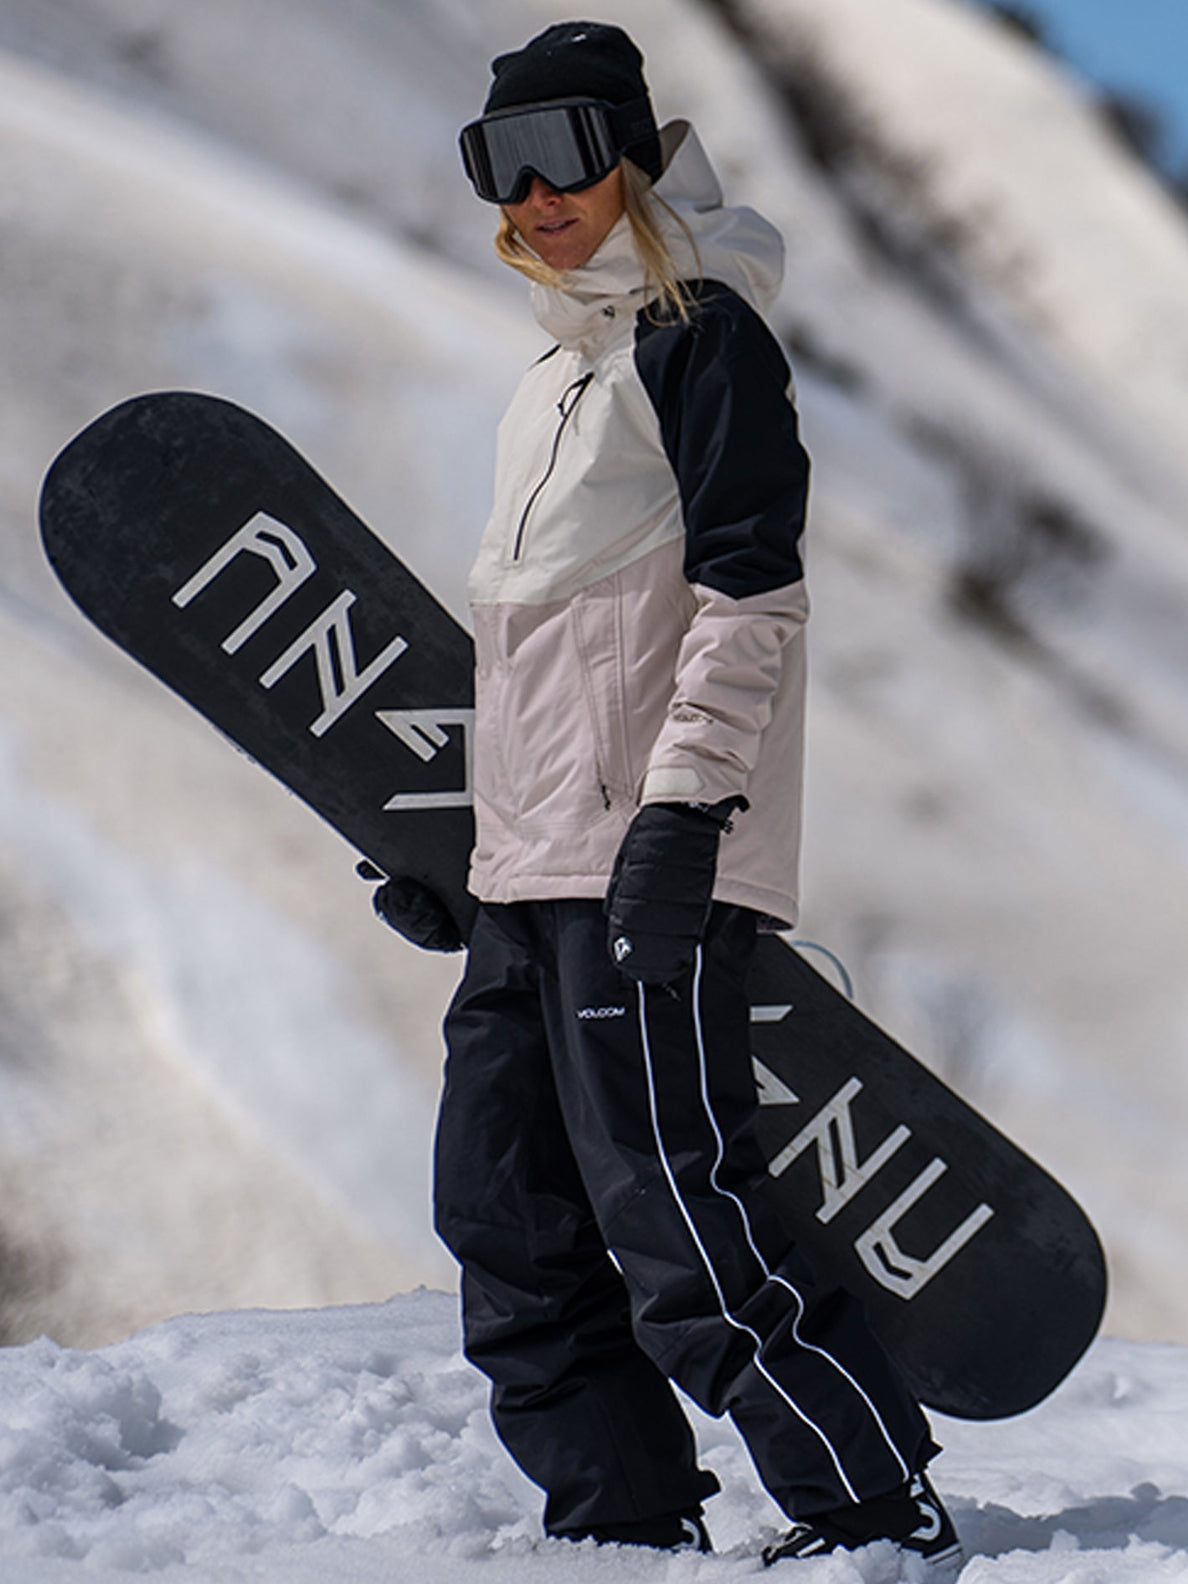 Acheter Support de poignet réglable pour le snowboard, le ski, le